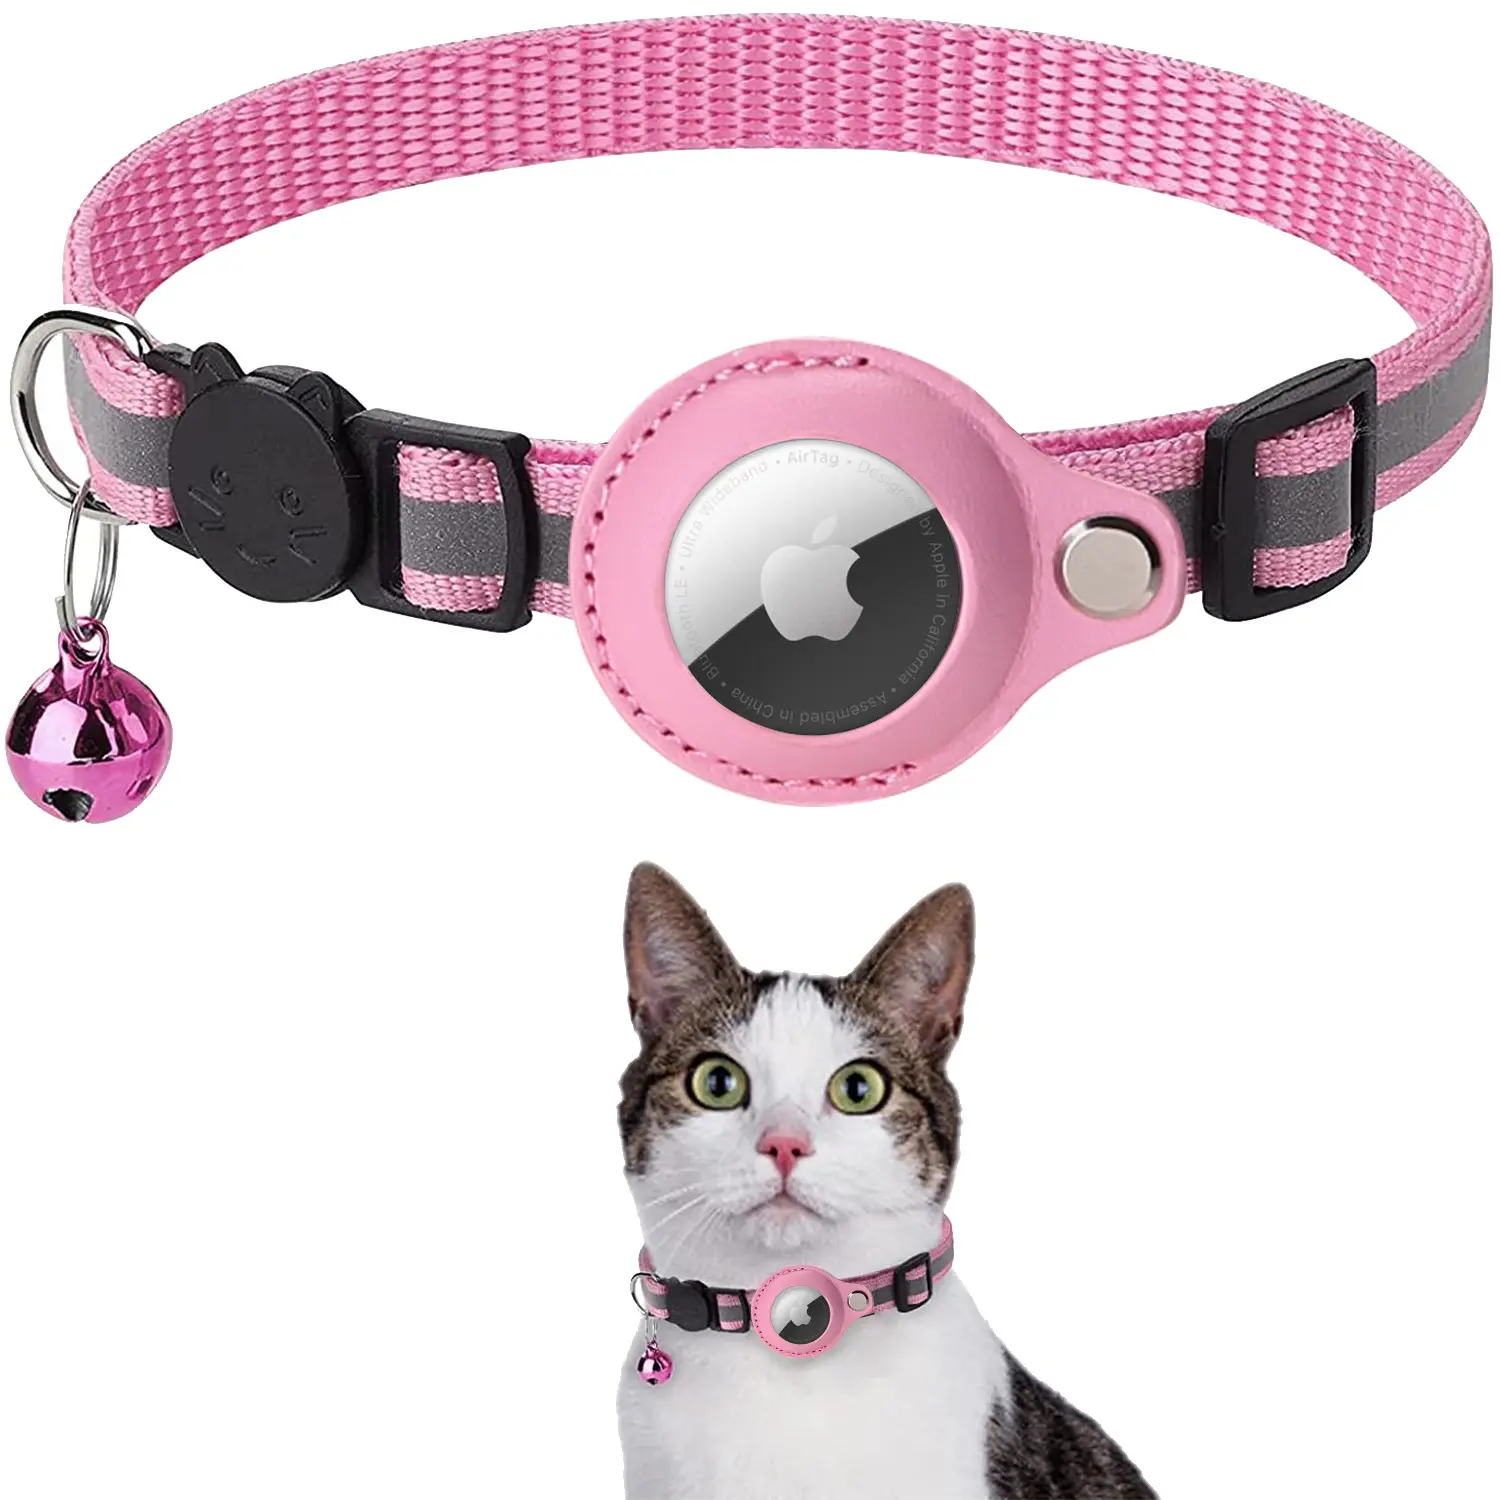 Luxus Hot Sales verstellbares Katzen halsband Reflektieren der Großhandel Weiches Nylon Airtag Haustier Katzen halsband mit Glocke für kleines Hunde gehen